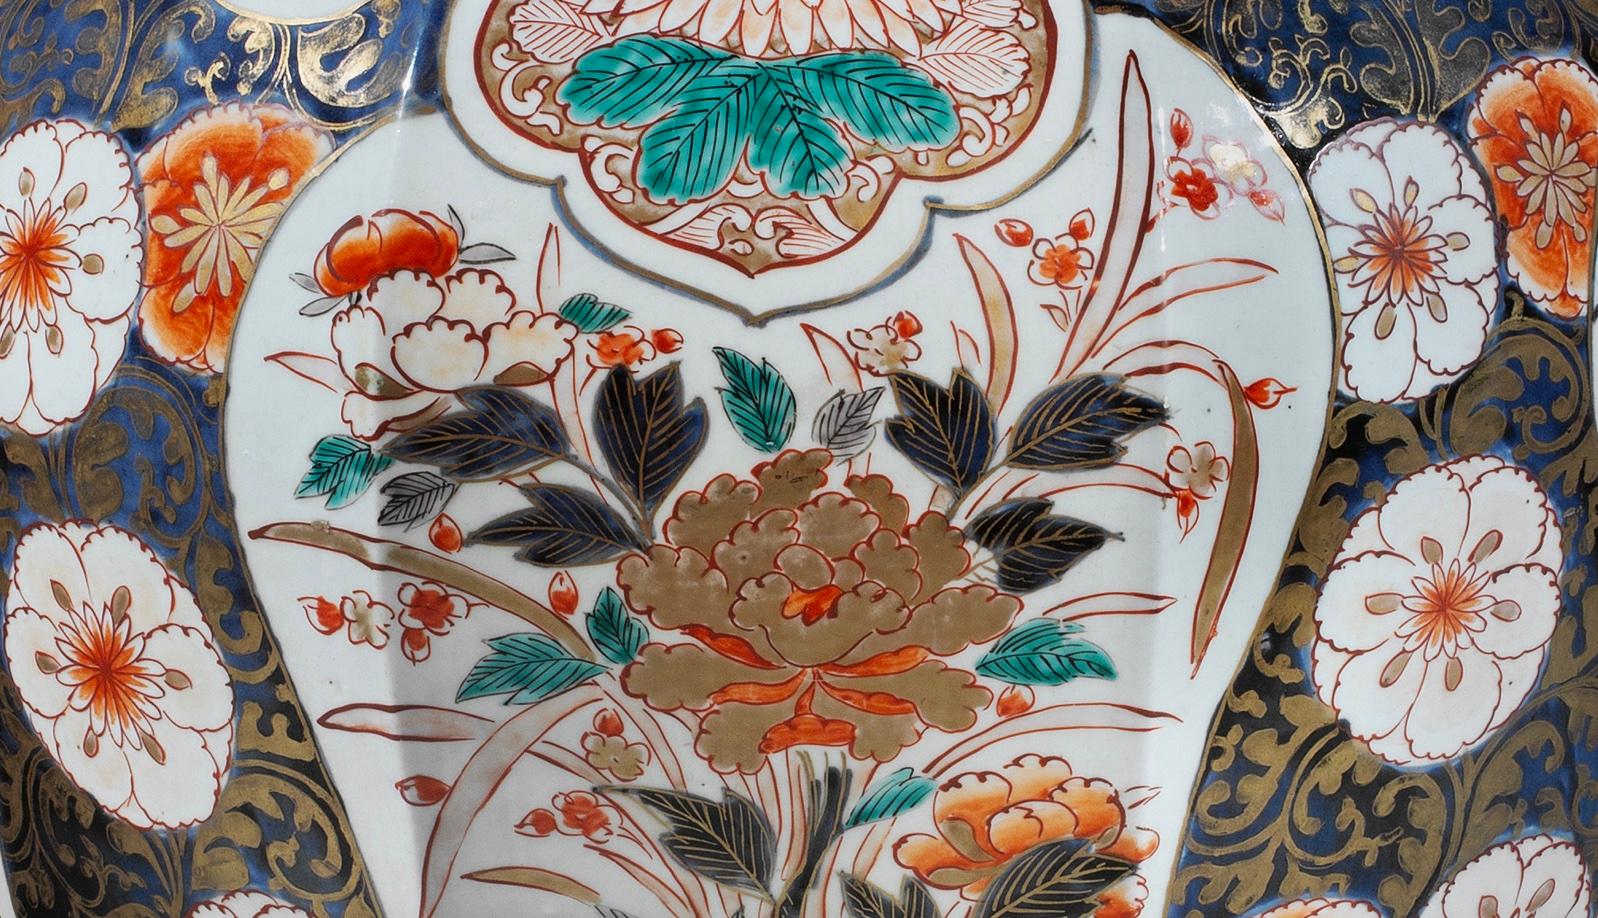 Magnifique vase Imari du XVIIIe siècle aux proportions impressionnantes. Le vase de forme octogonale est merveilleusement décoré dans la palette Imari à dominante de bleus et de rouges de fer sur fond blanc, avec des rehauts dorés. Avec des panneaux